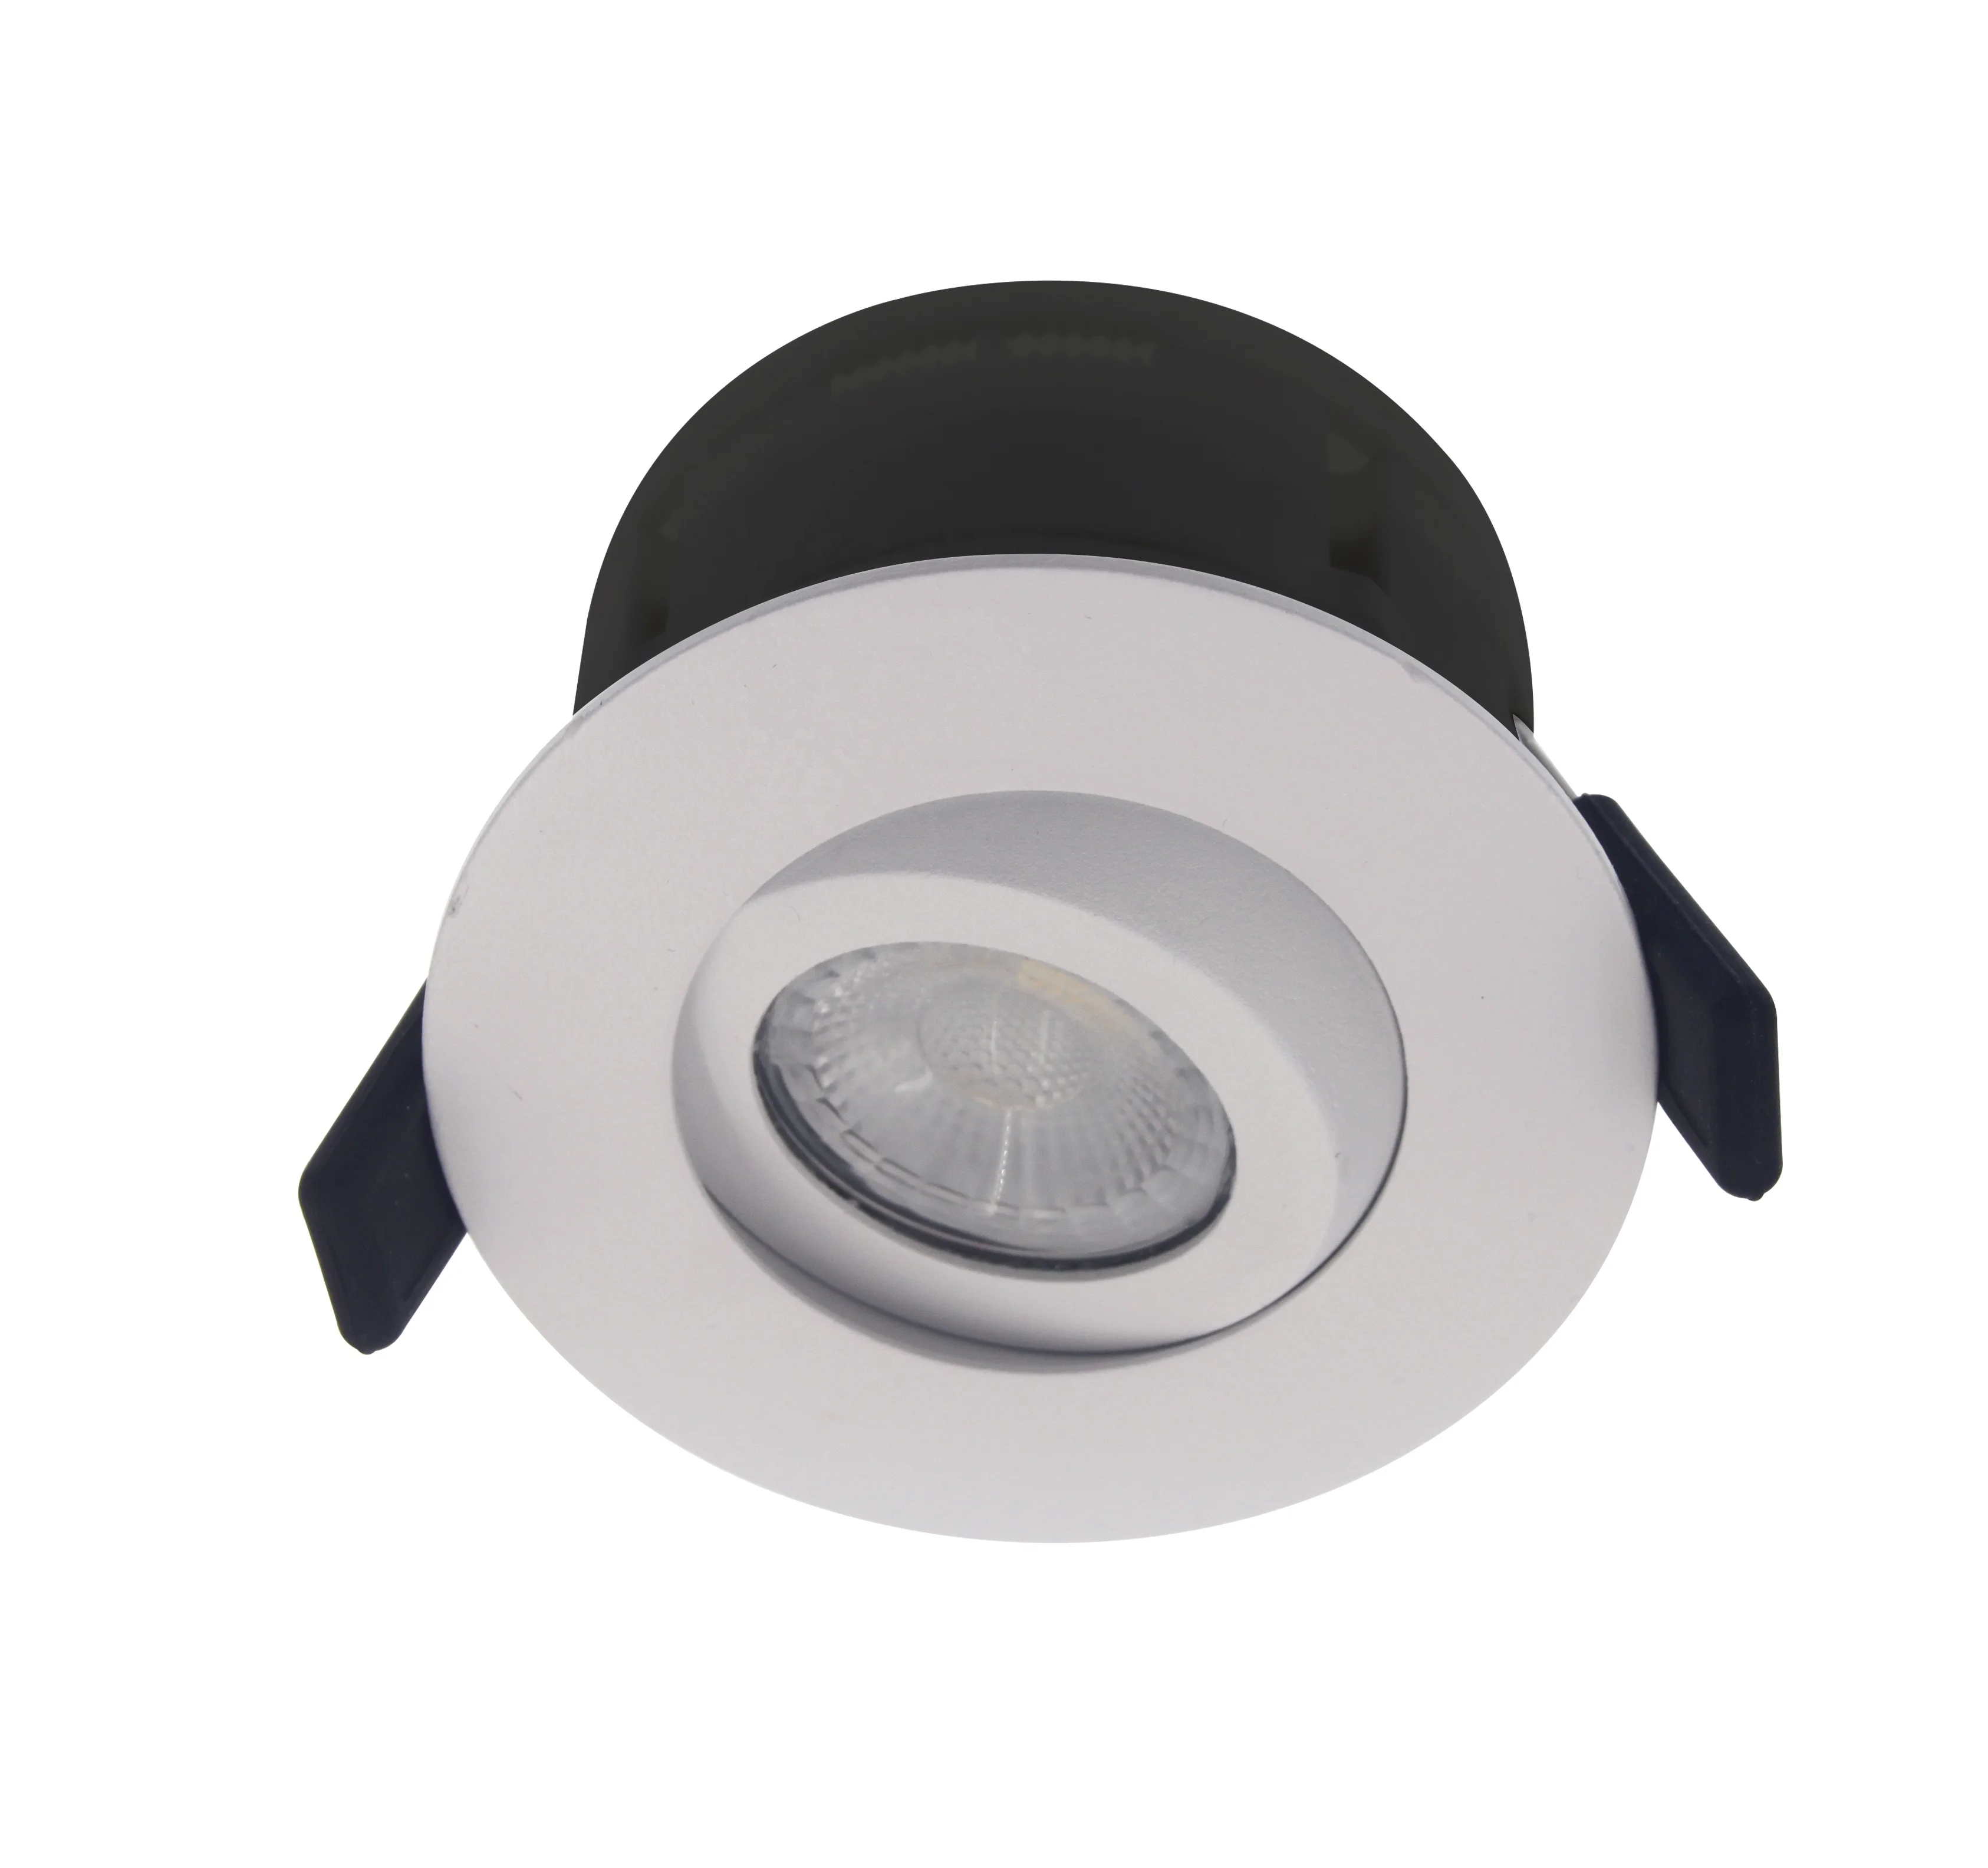 2019 New Design 360 Degree Rotation CRI>90 Ceiling Light Led Downlight Pot Light